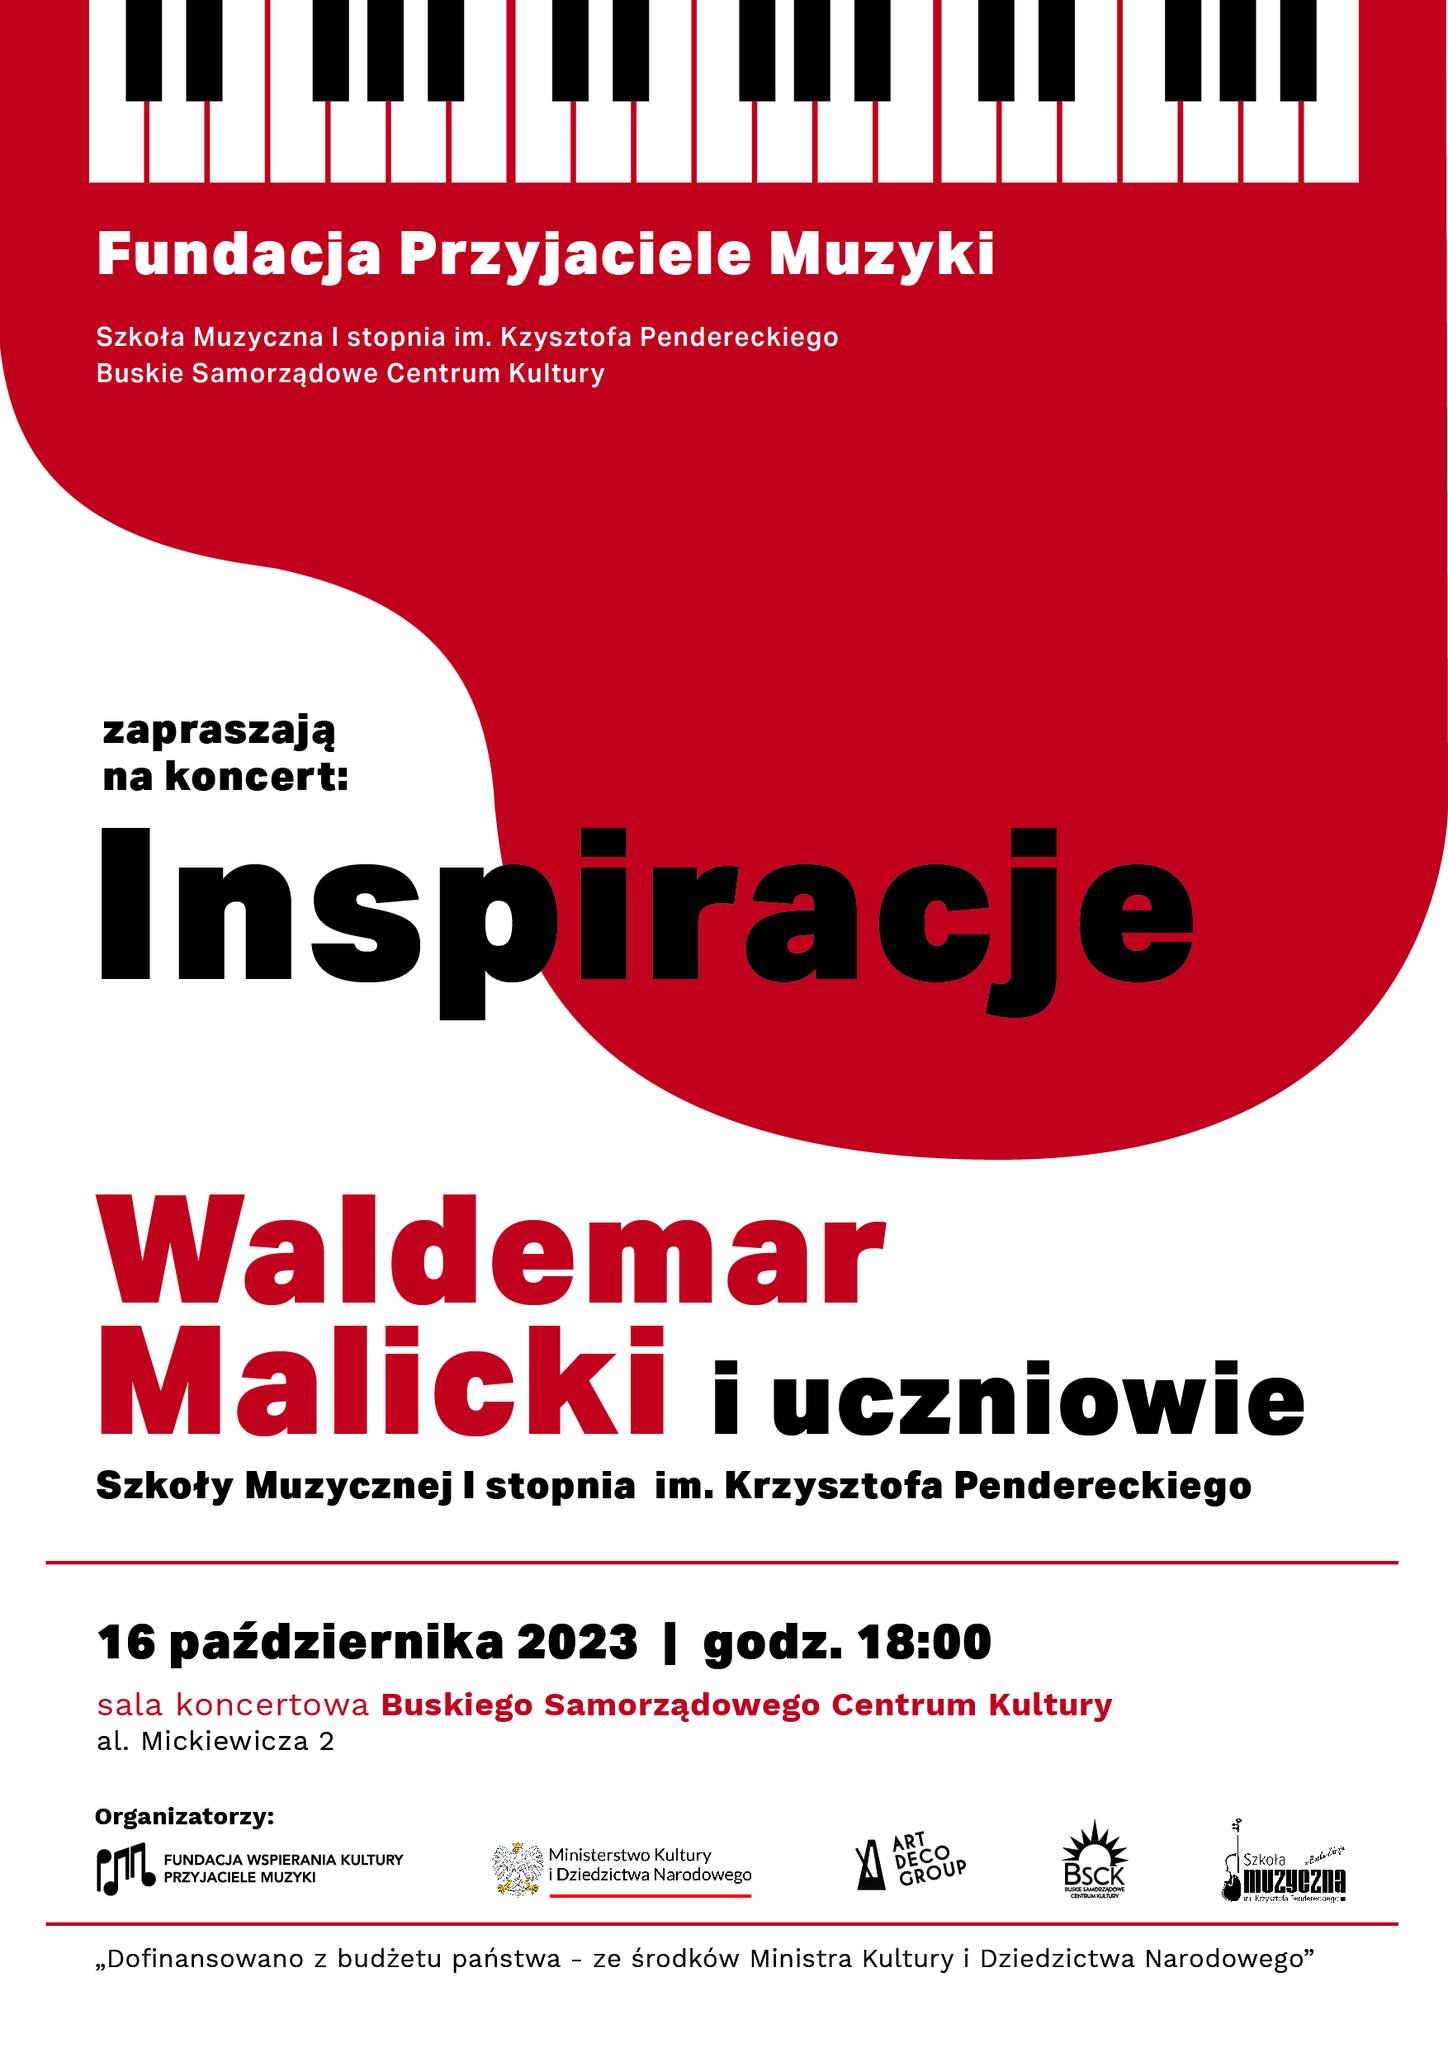 plakat promujący koncert pt. Inspiracje, biało czerwona grafika, stylizowany fortepian